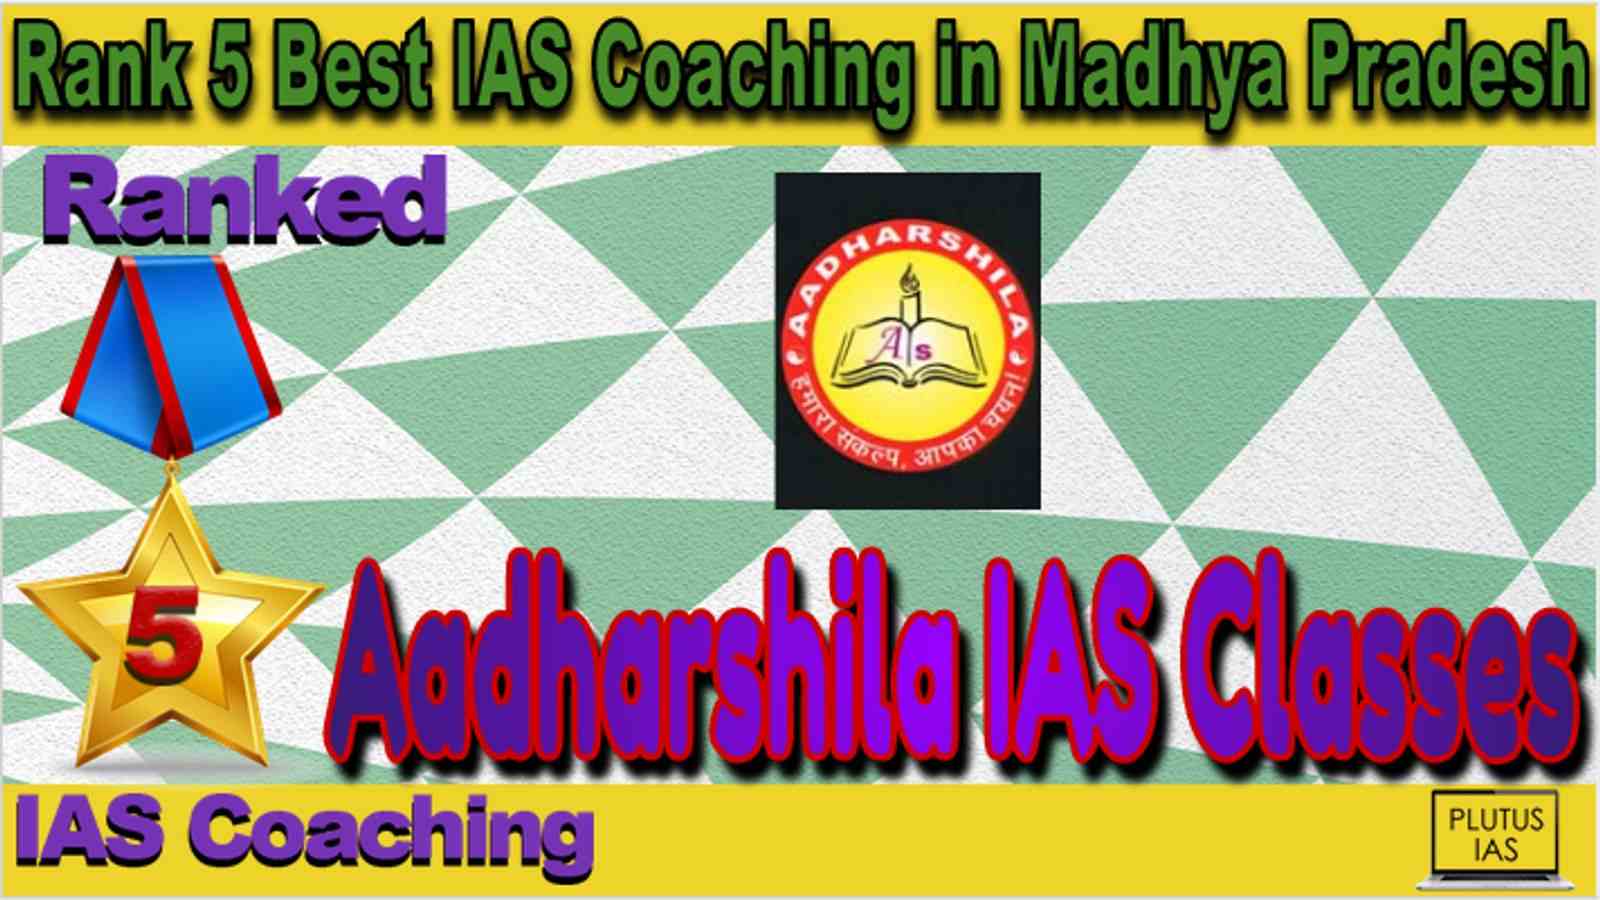 Rank 5 Best IAS Coaching in Madhya Pradesh